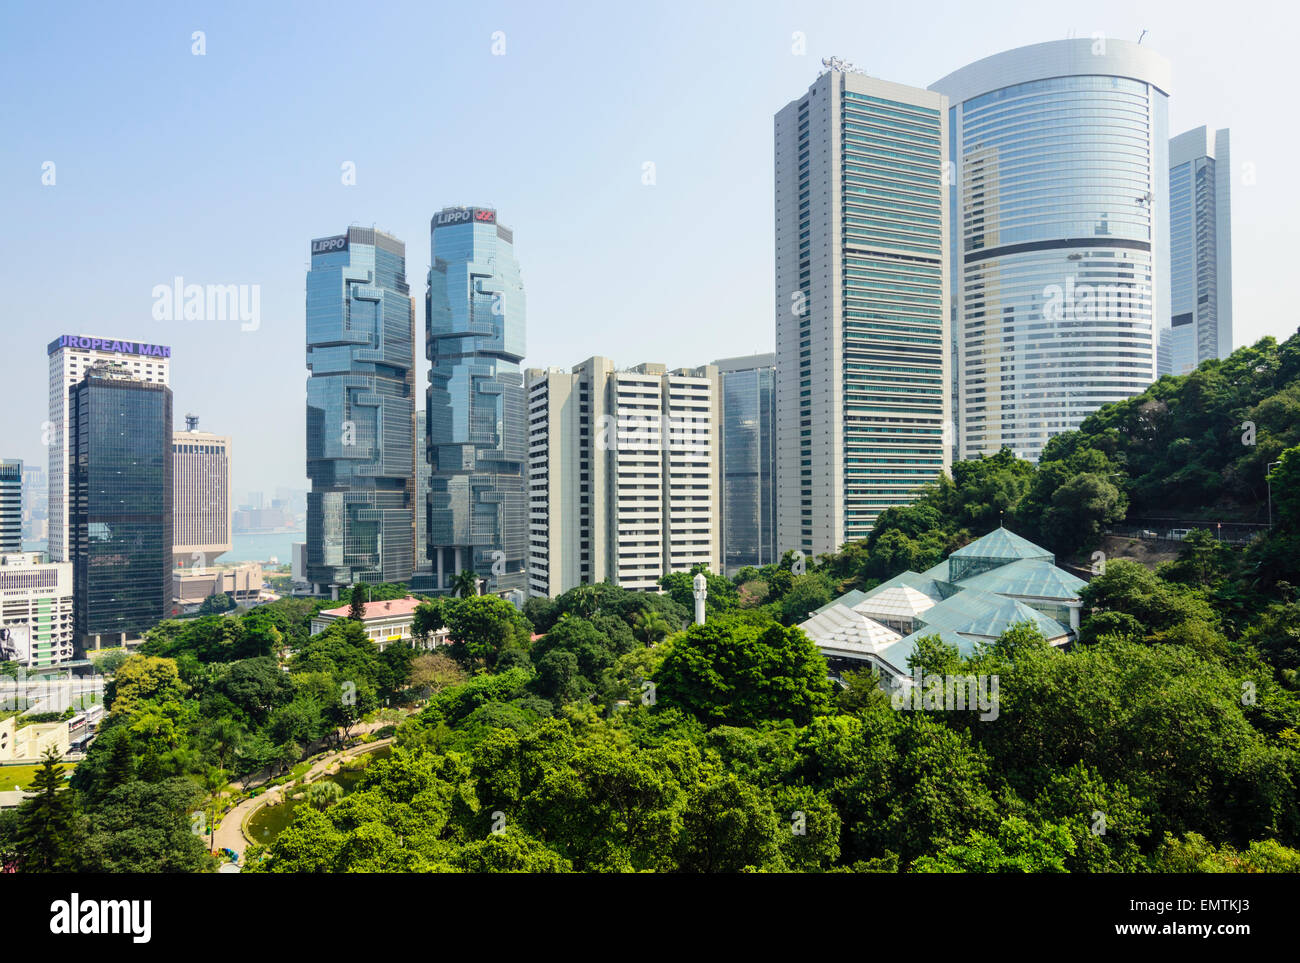 Looking over the modern high-rise buildings of Admiralty from Hong Kong Park, Hong Kong Island, Hong Kong, China Stock Photo